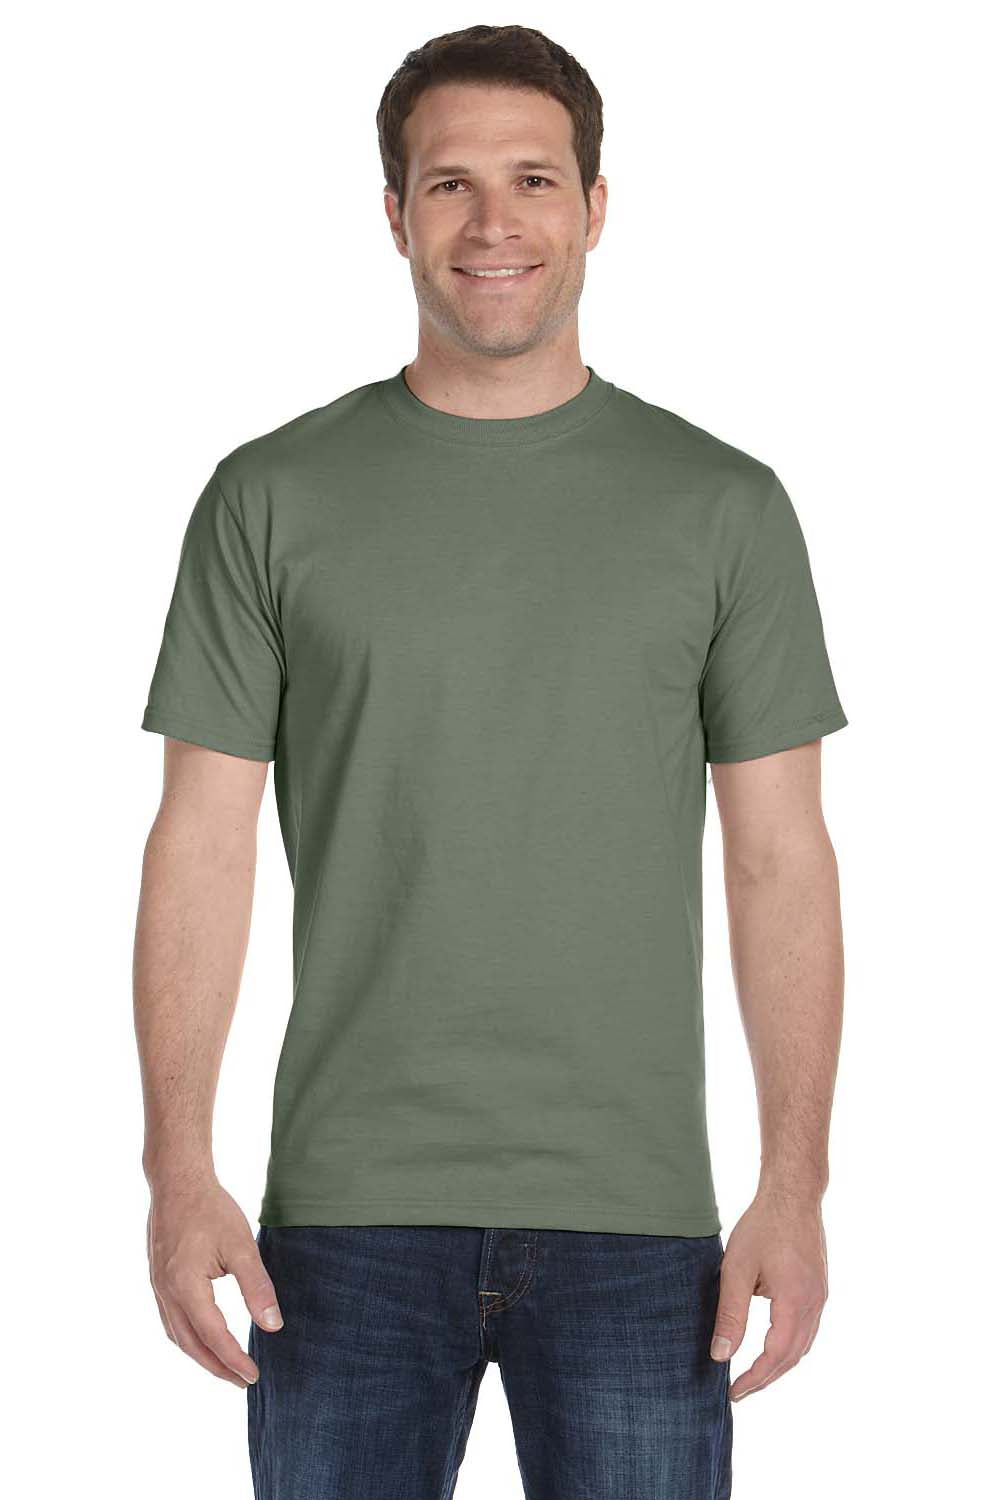 Hanes 5180 Mens Beefy-T Short Sleeve Crewneck T-Shirt Fatigue Green Front